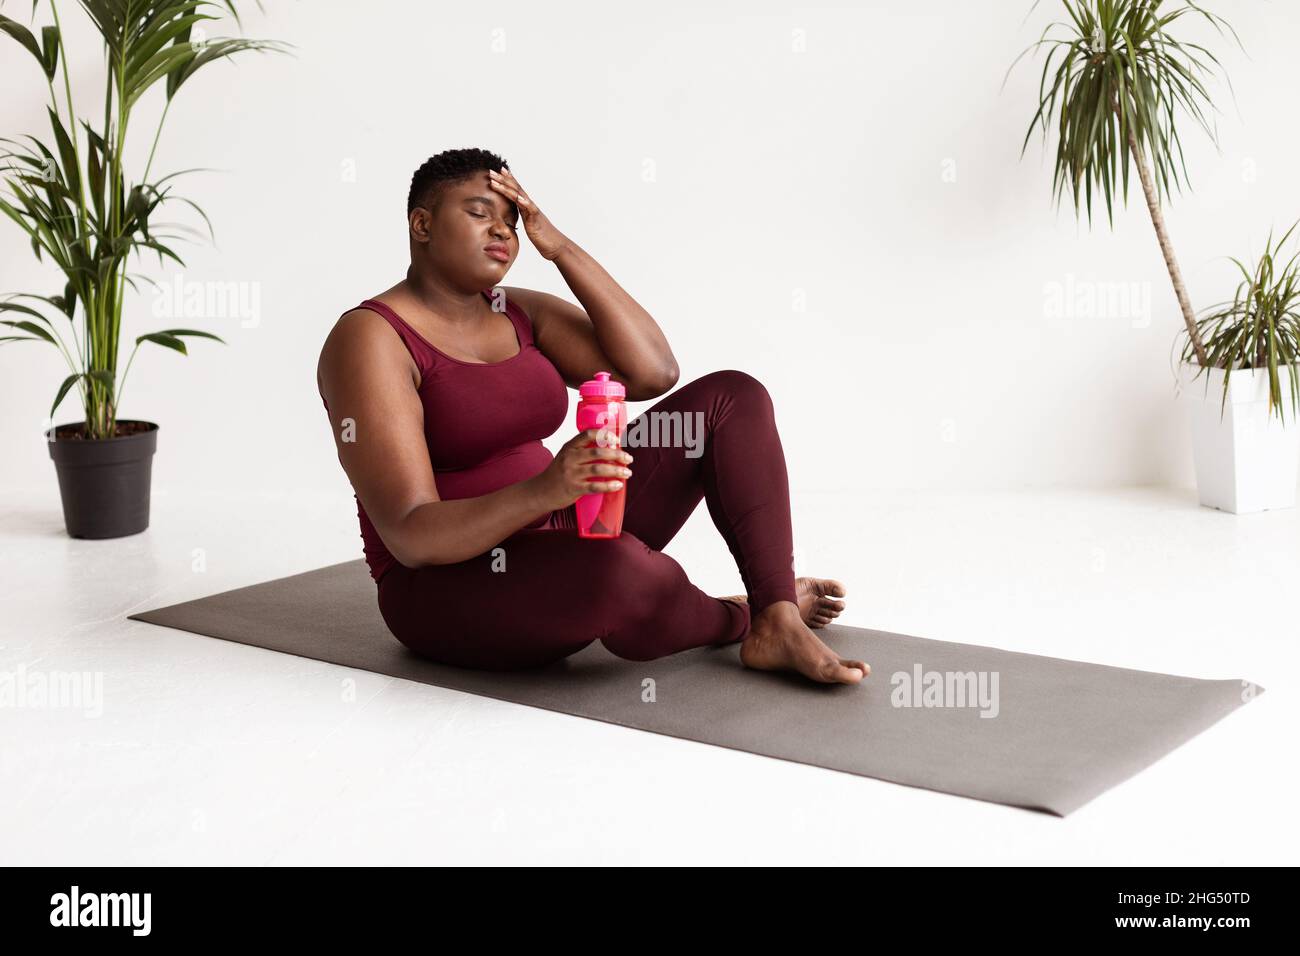 Esausta donna in sovrappeso seduta sul materassino fitness Foto Stock